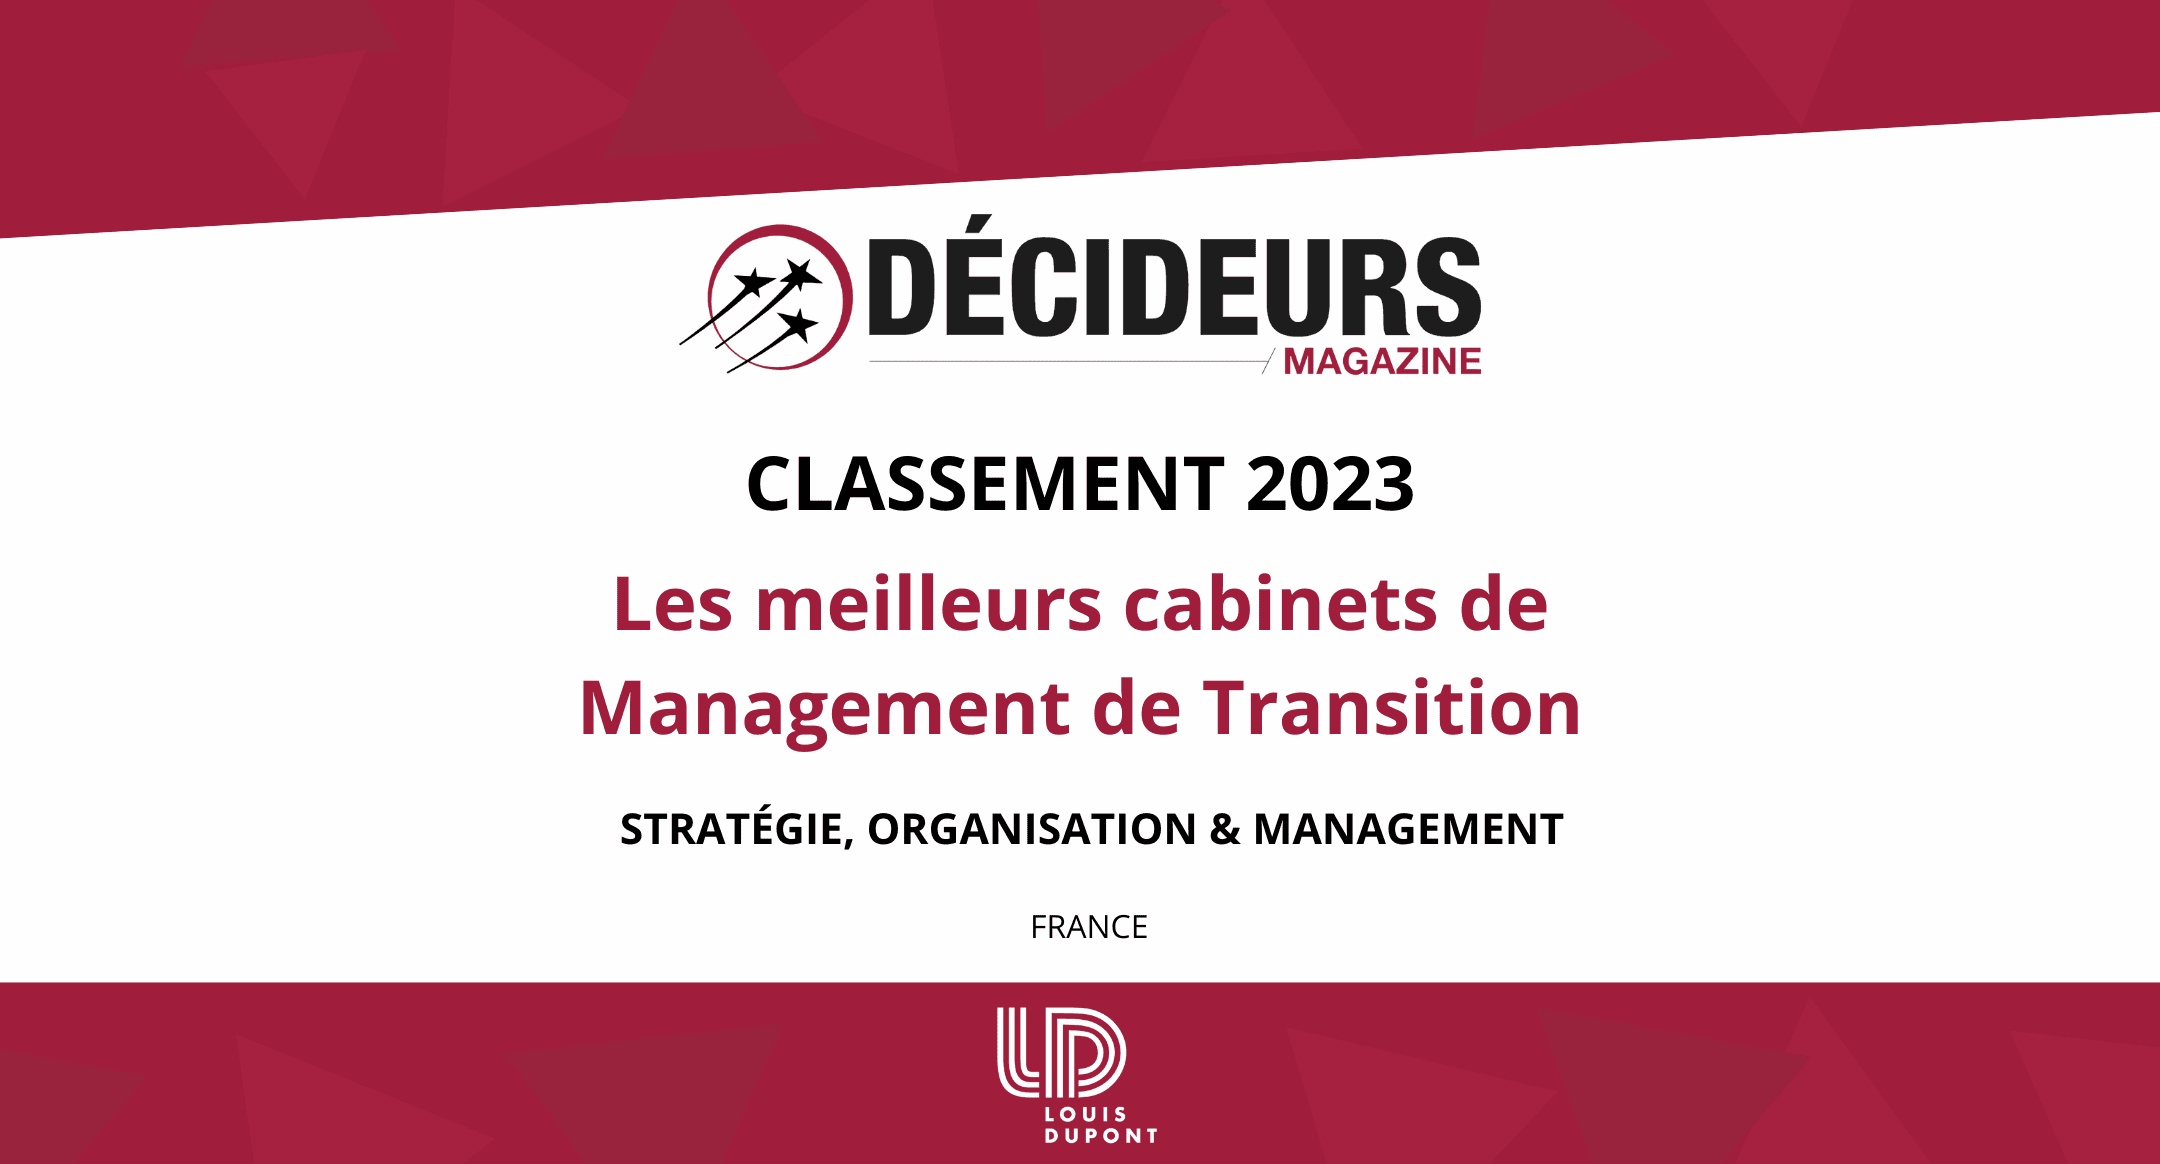  Classement Décideurs 2023/2024 : Les meilleurs cabinets de Management de Transition